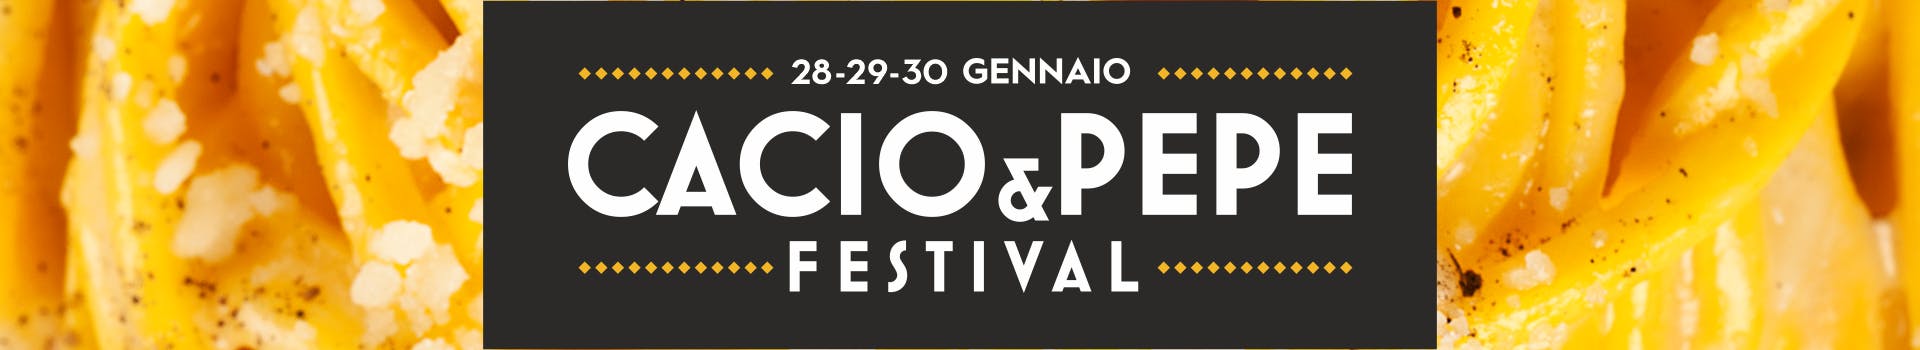 Cacio e Pepe Festival Eataly Roma